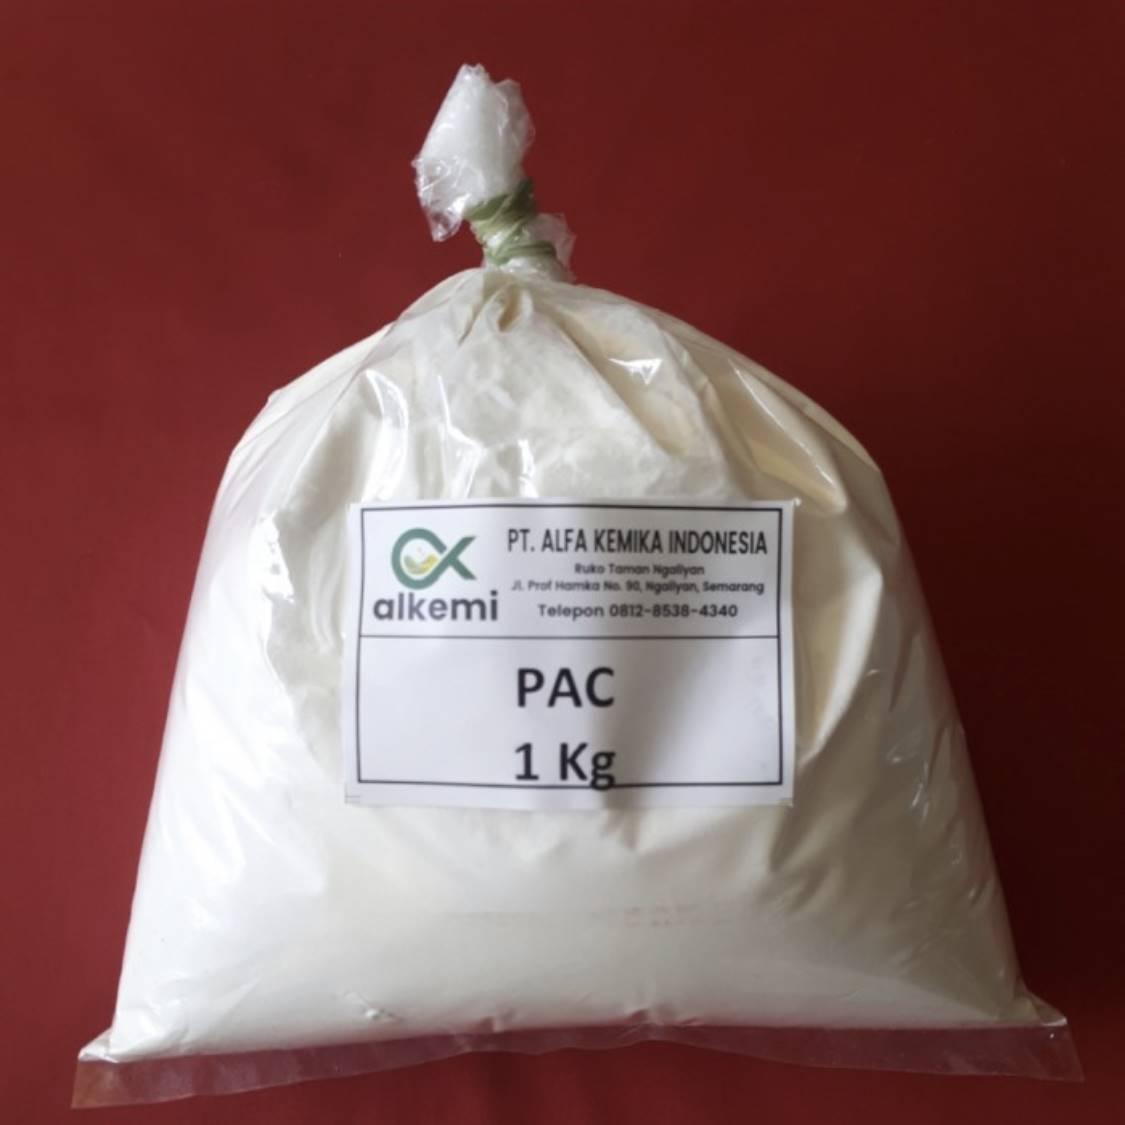 PAC / Poly Aluminium Chloride